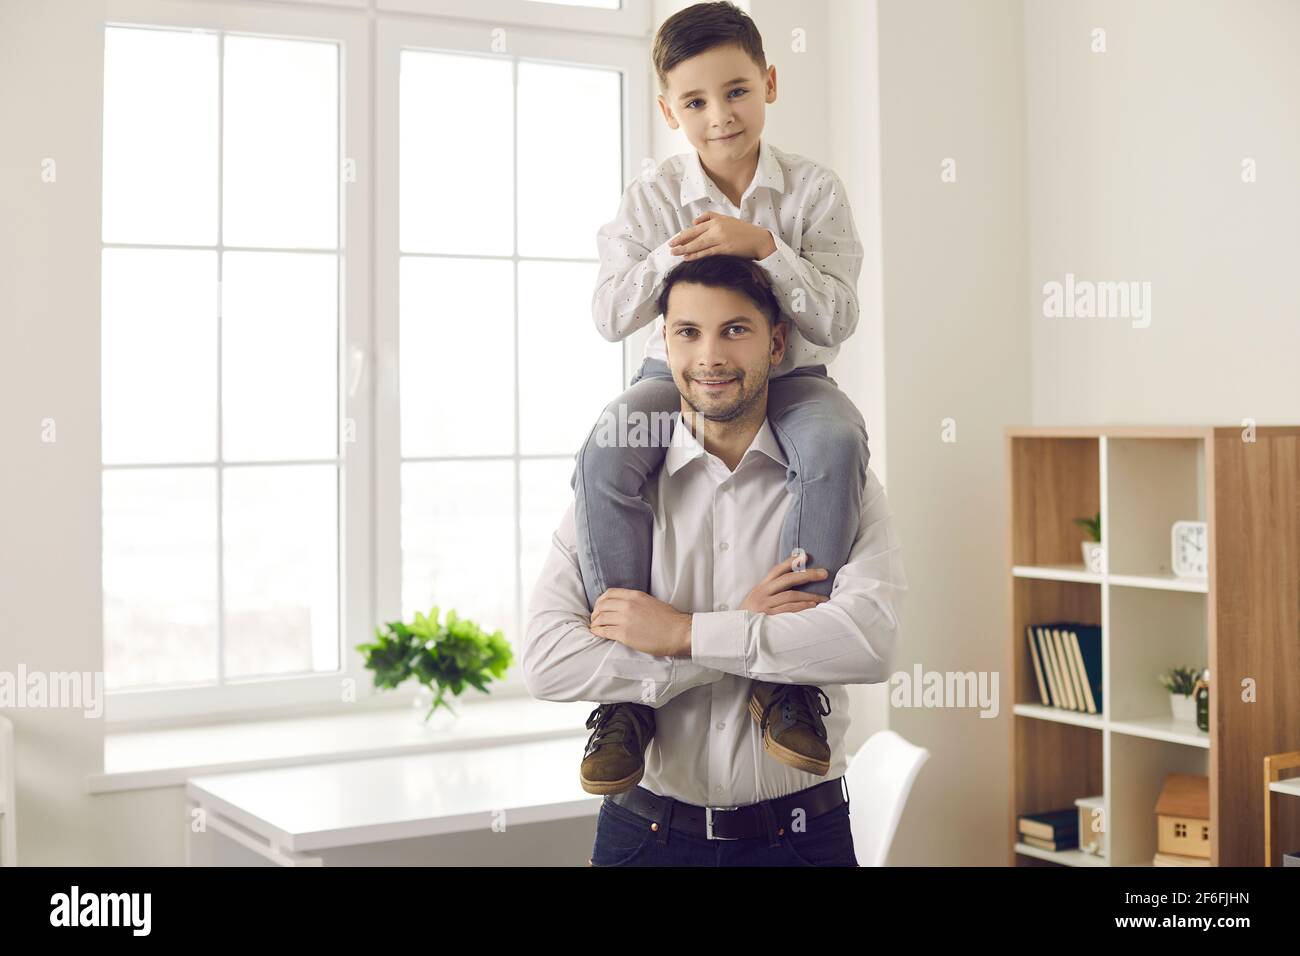 Lächelnder kaukasischer Vater hält den Sohn auf den Schultern und schaut beide an Kamera im Hochformat Stockfoto